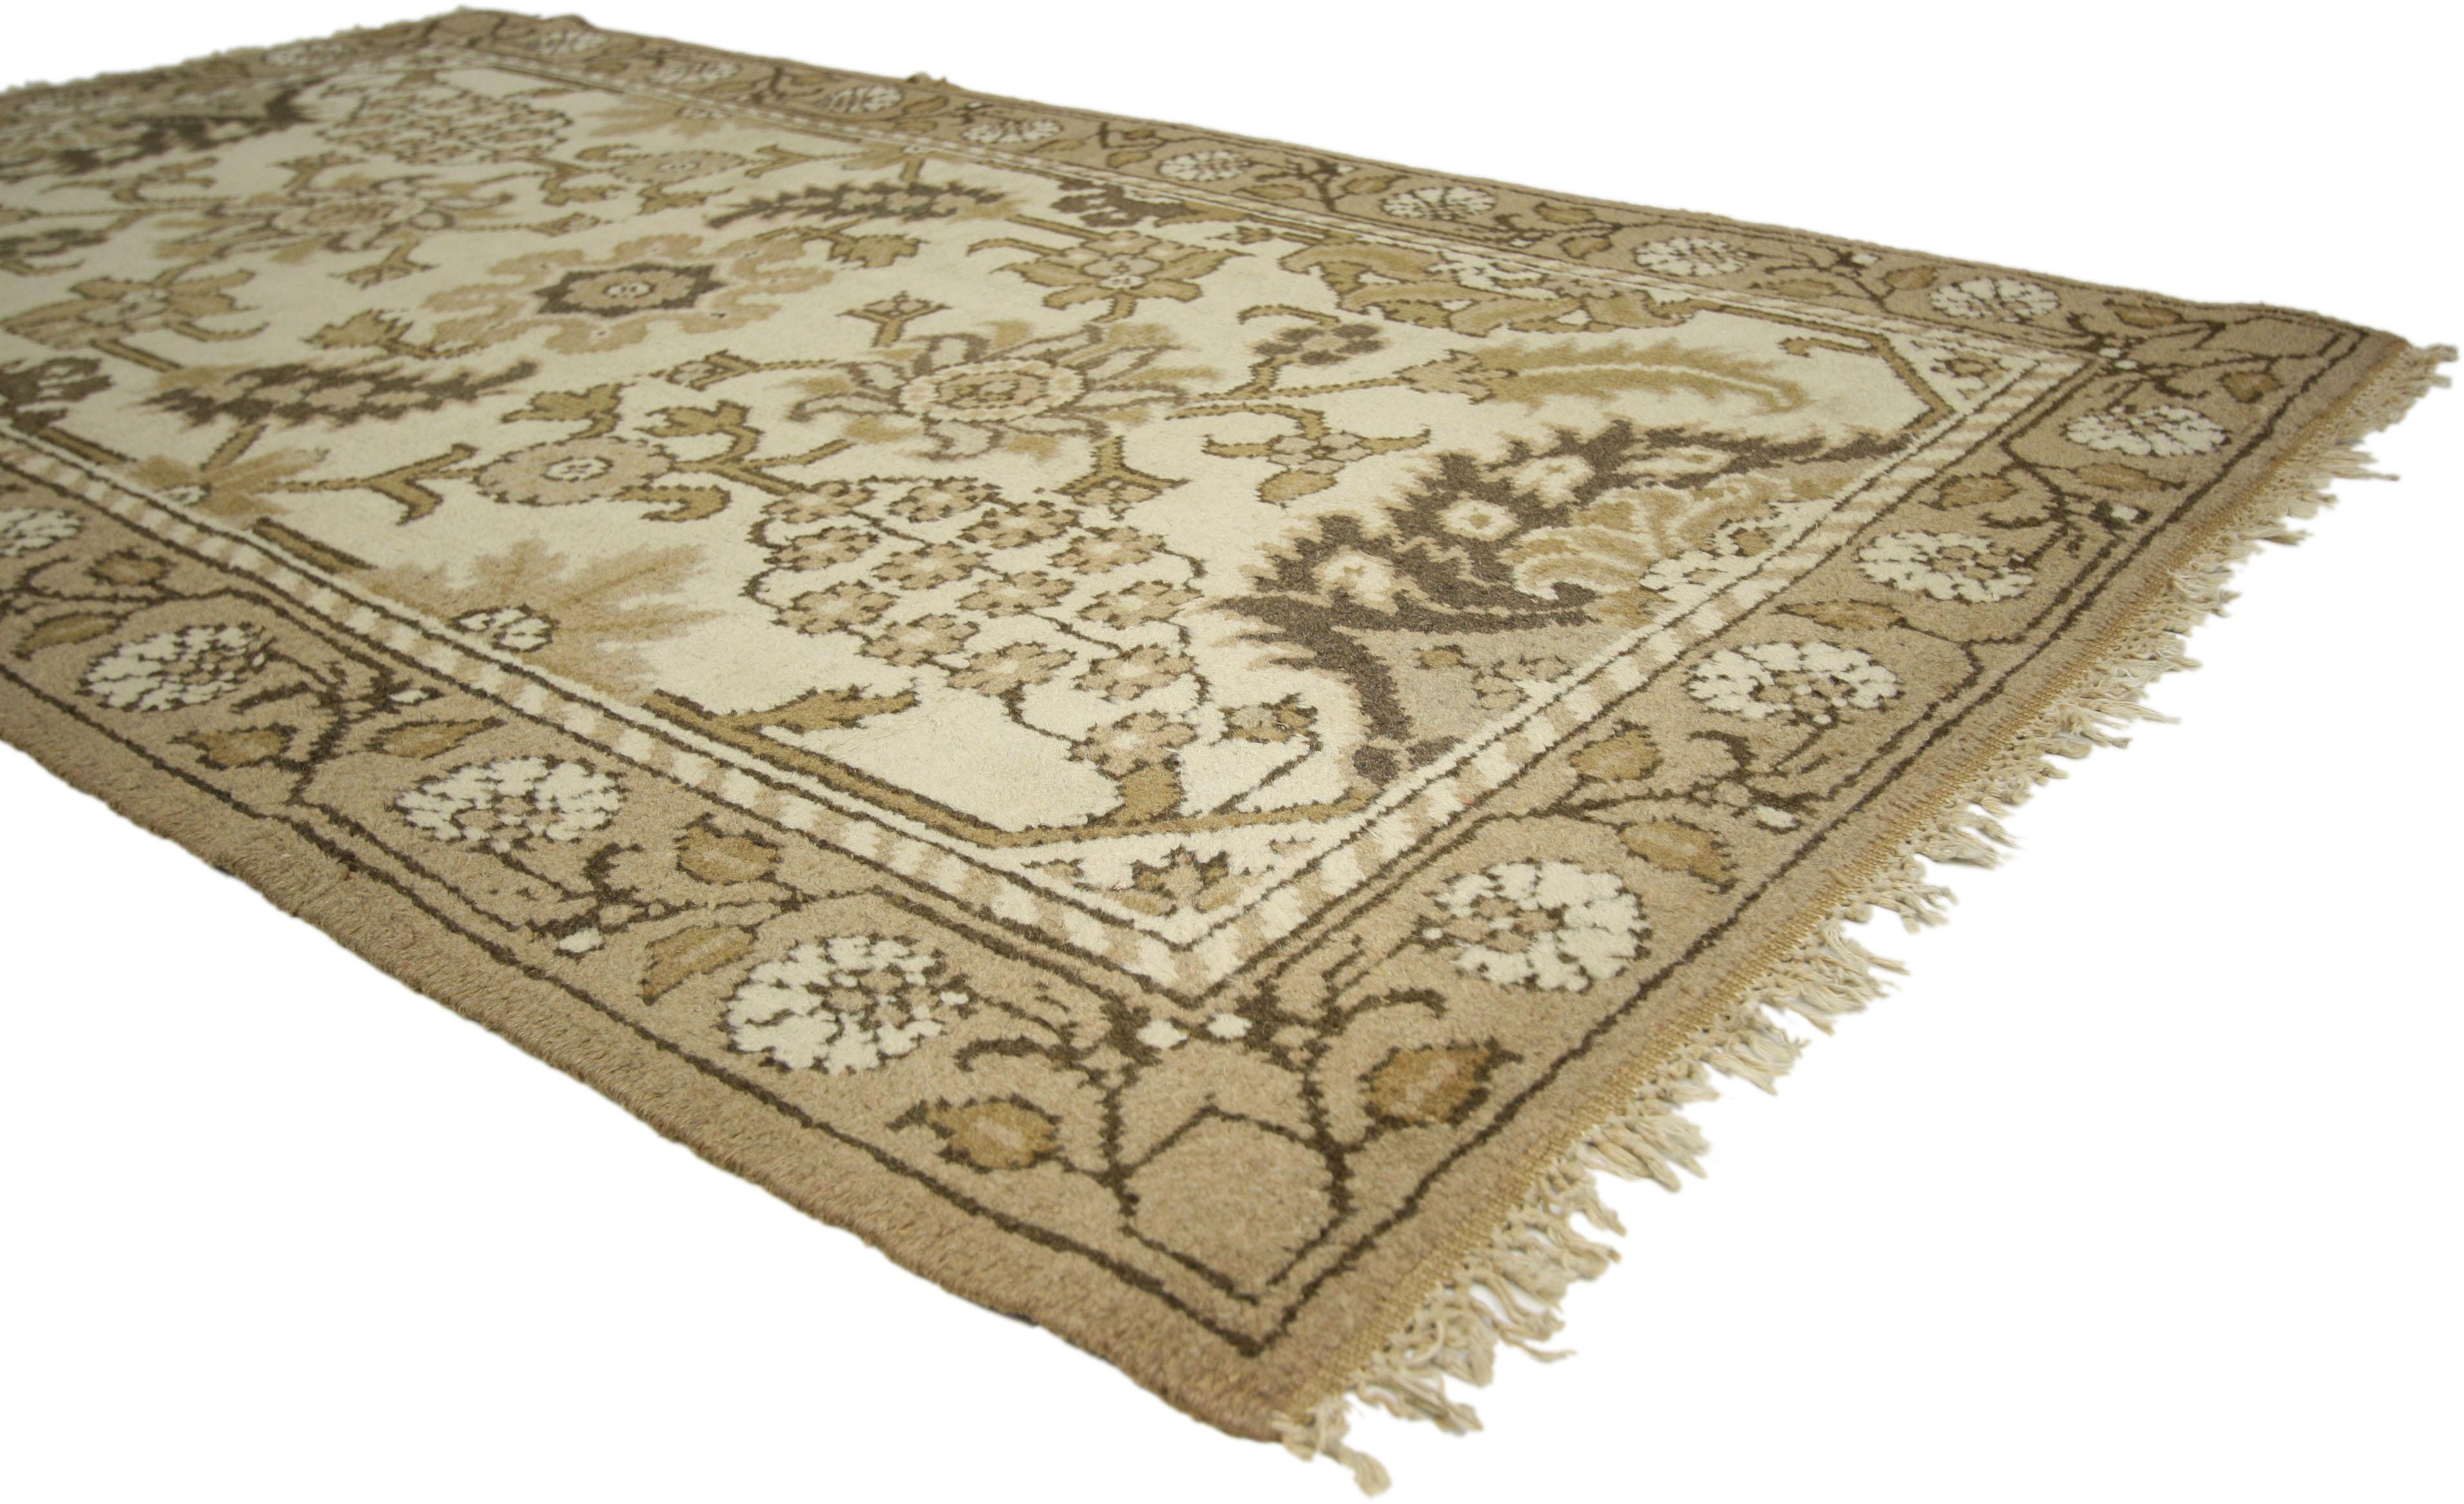 71889 Antiker indischer Agra-Teppich mit modernem rustikalem Shaker-Stil 04'00 x 06'08.​​ Dieser handgeknüpfte, antike indische Agra-Akzentteppich aus Wolle ist warm und einladend mit dem richtigen Maß an Altersspuren. Er zeigt ein großflächiges